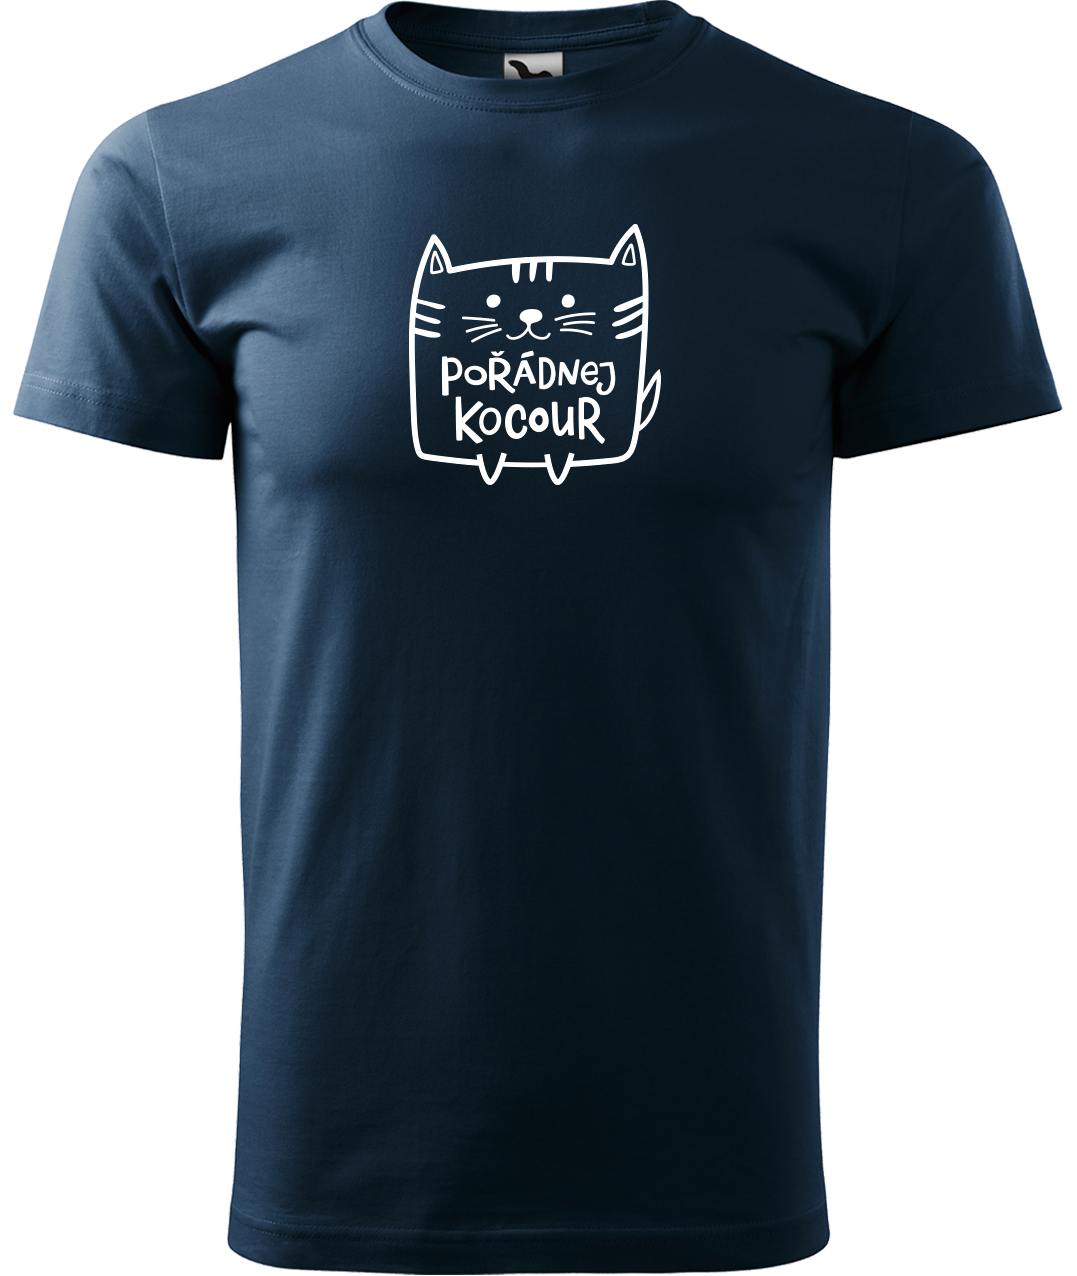 Pánské tričko s kočkou - Pořádnej kocour Velikost: 3XL, Barva: Námořní modrá (02)